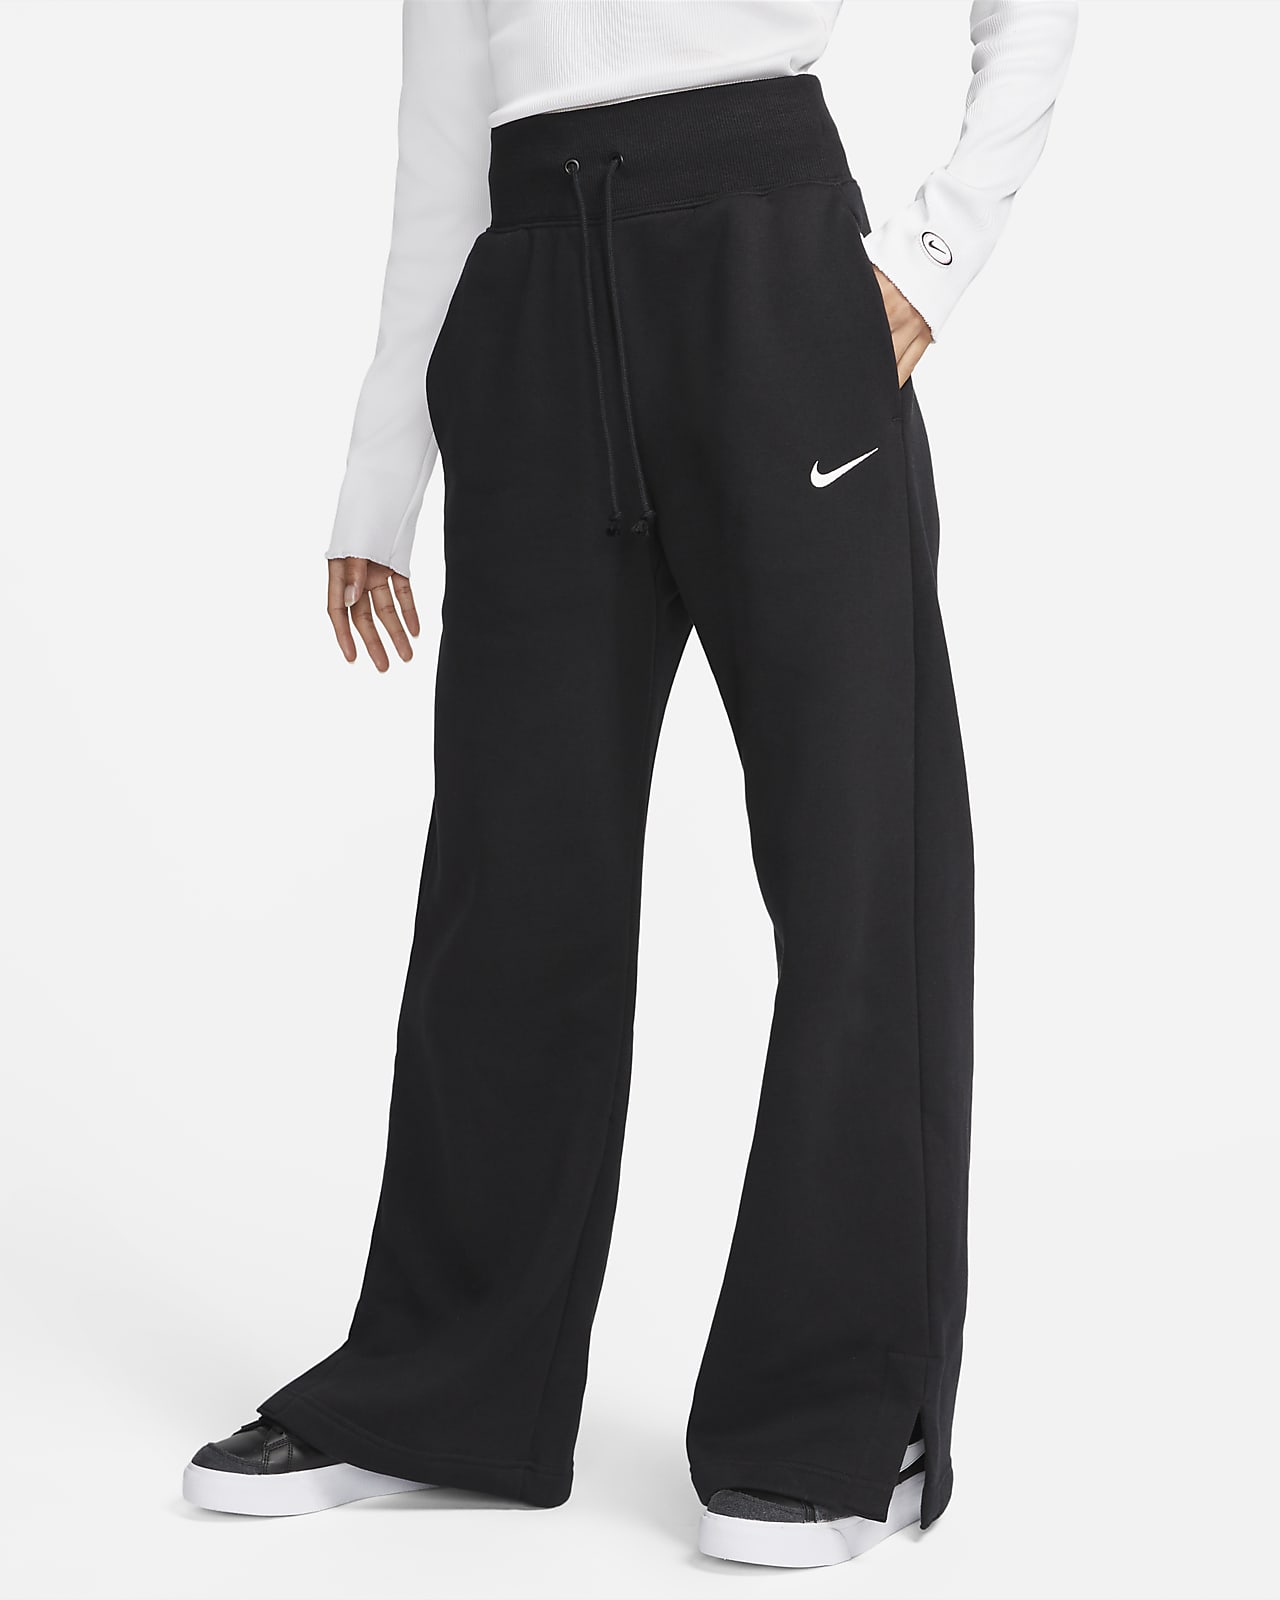 Pants de entrenamiento de piernas anchas y tiro alto para mujer Nike Sportswear Phoenix Fleece